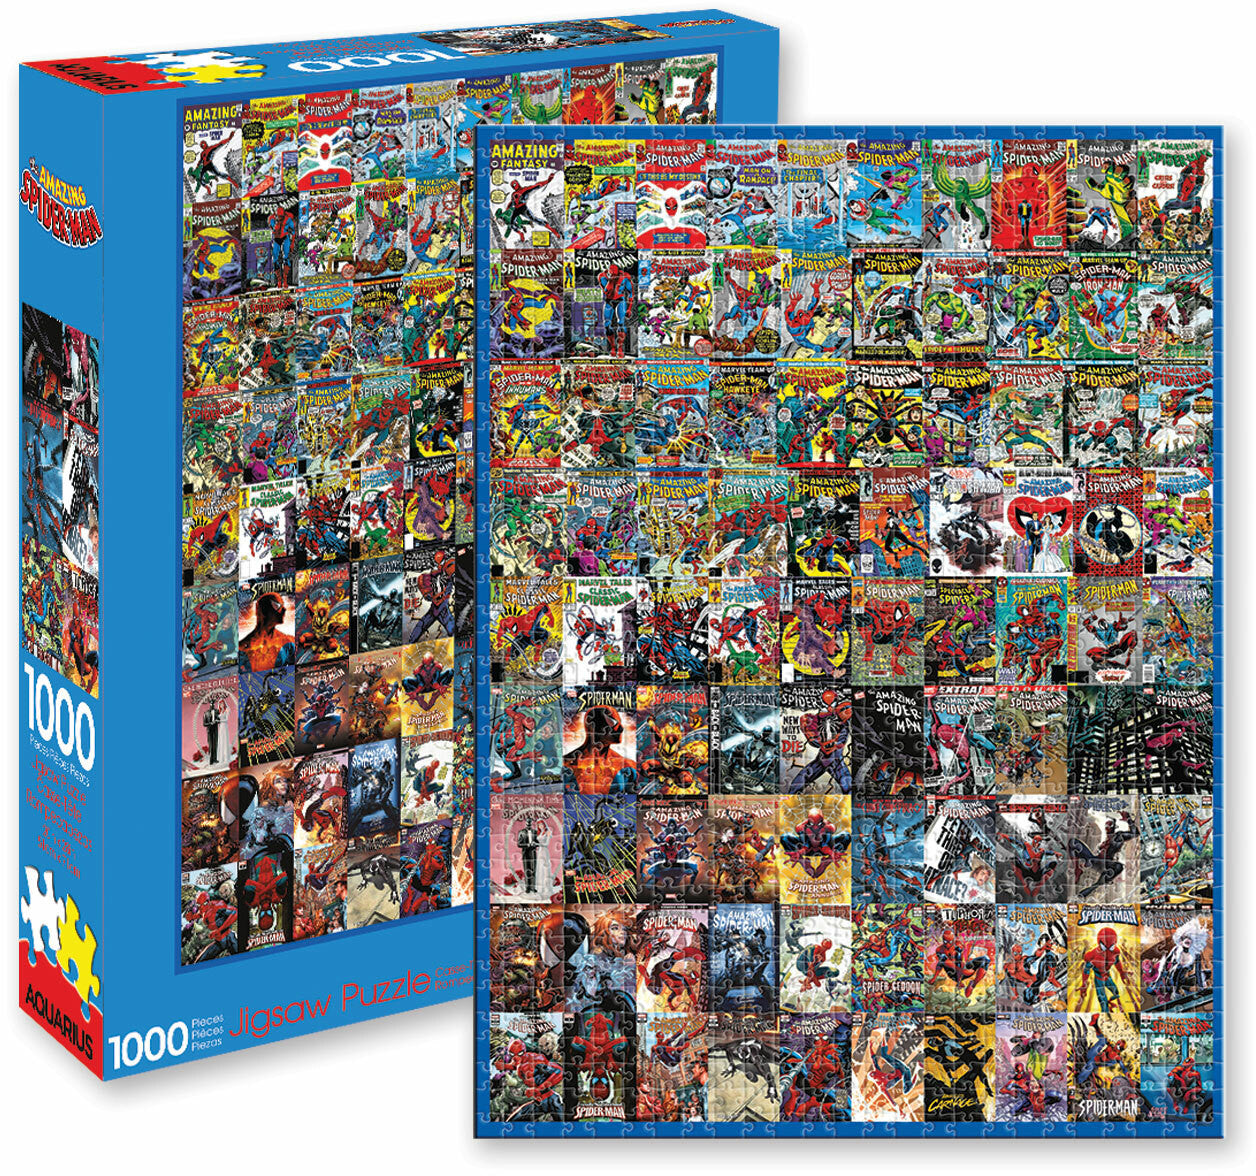 Aquarius Puzzle Marvel Spiderman Covers Puzzle 1,000 pieces